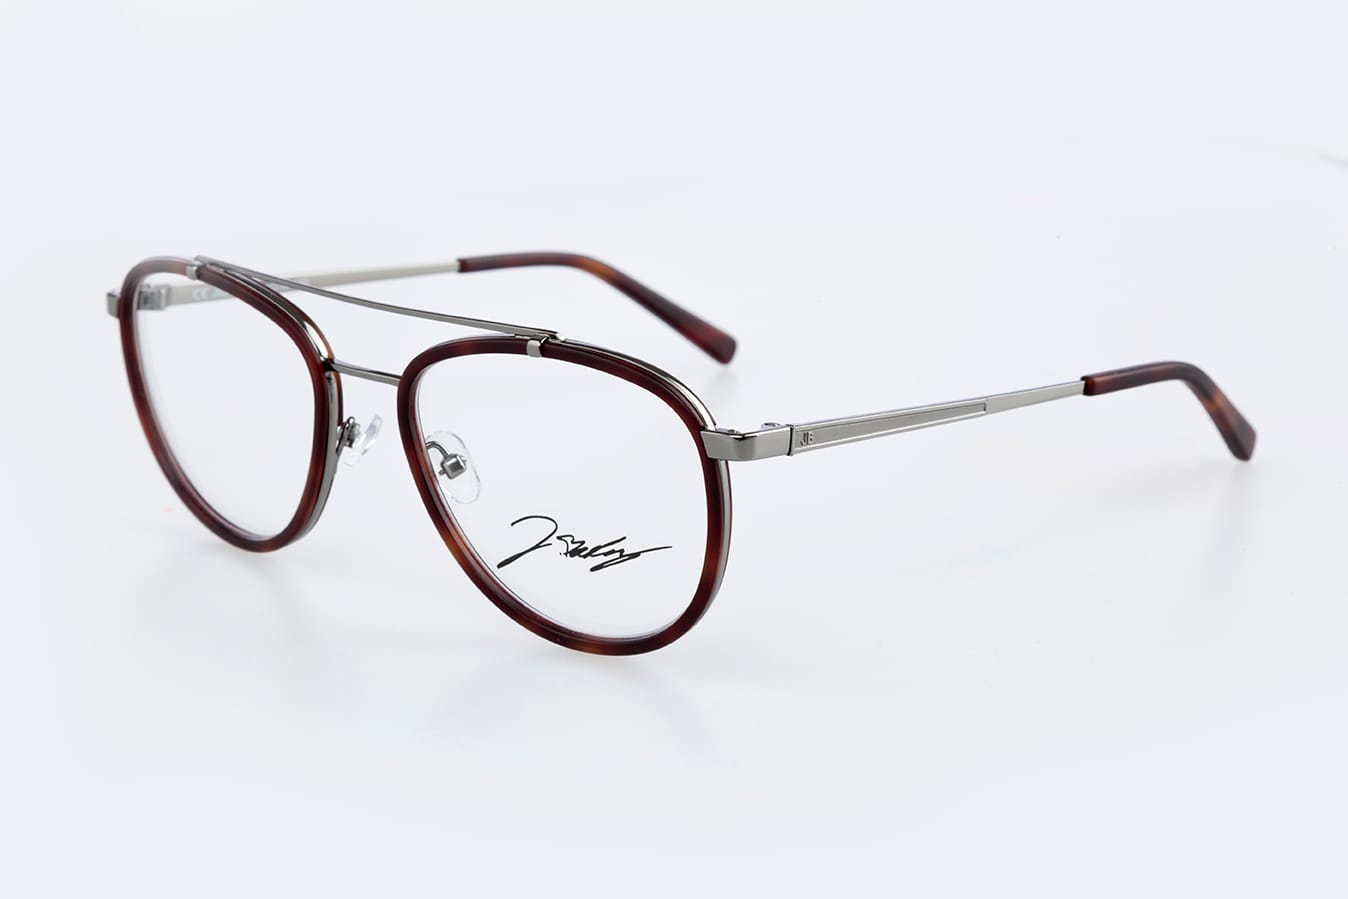 Mit seinen Brillen betritt Jérôme Boateng zwar selbst Neuland, da dies seine erste Brillenkollektion ist. Die Brillen selbst erinnern jedoch stark an die bekannten Wayfarer und Pilotenbrillen. Schön sind sie dennoch. Hier das Modell "Munich" (ab 169 Euro).